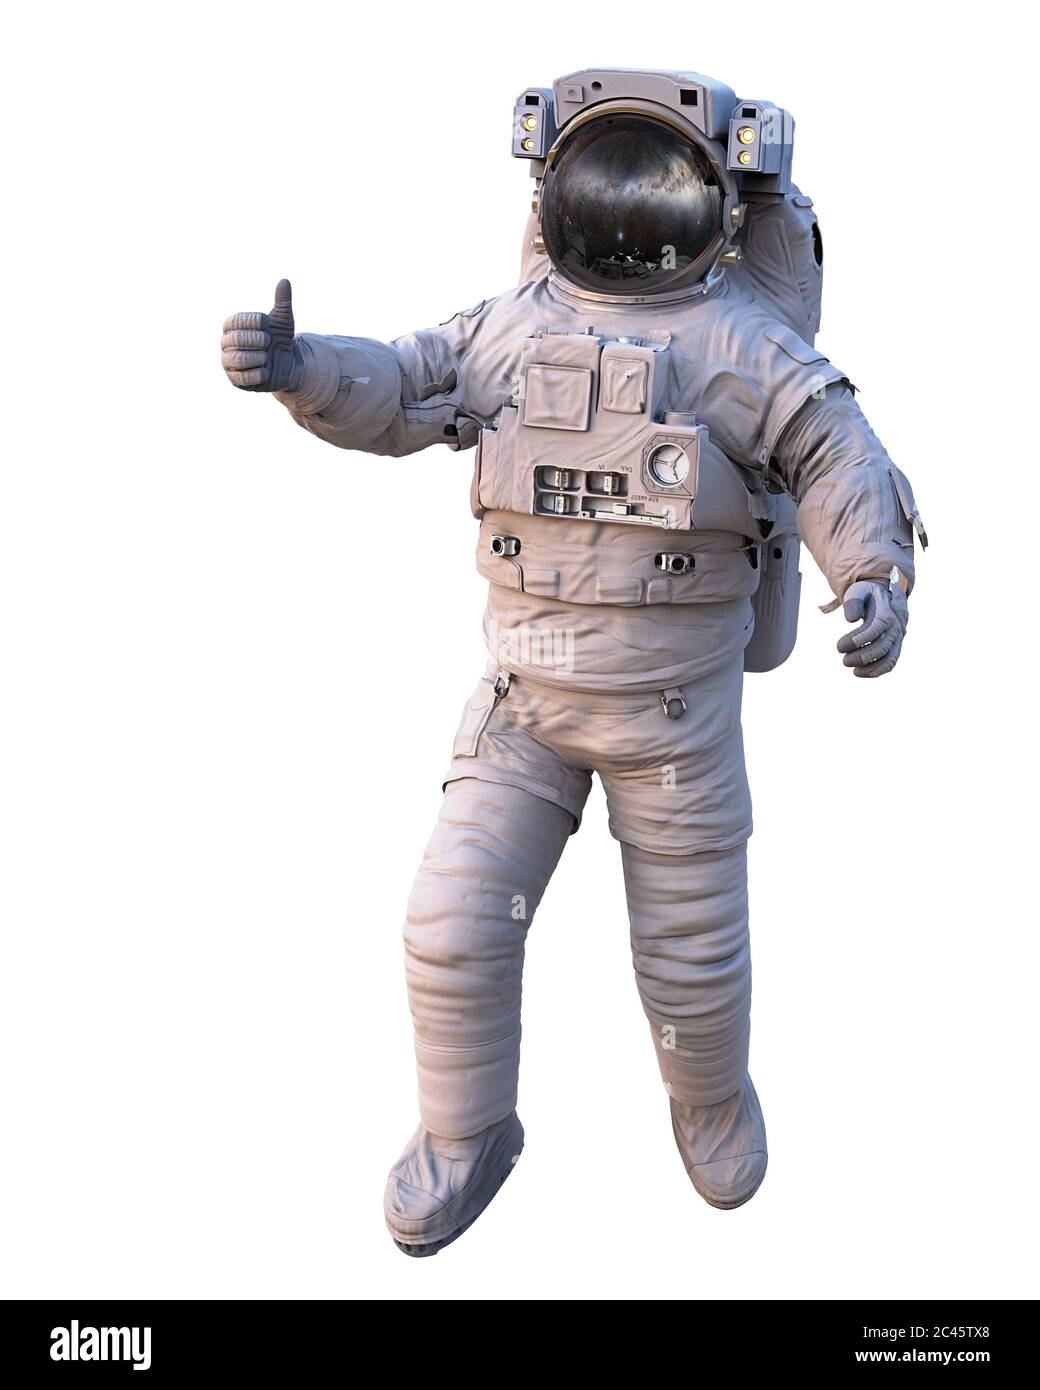 astronaute qui se fait des pouces pendant la promenade spatiale, isolé sur fond blanc Banque D'Images